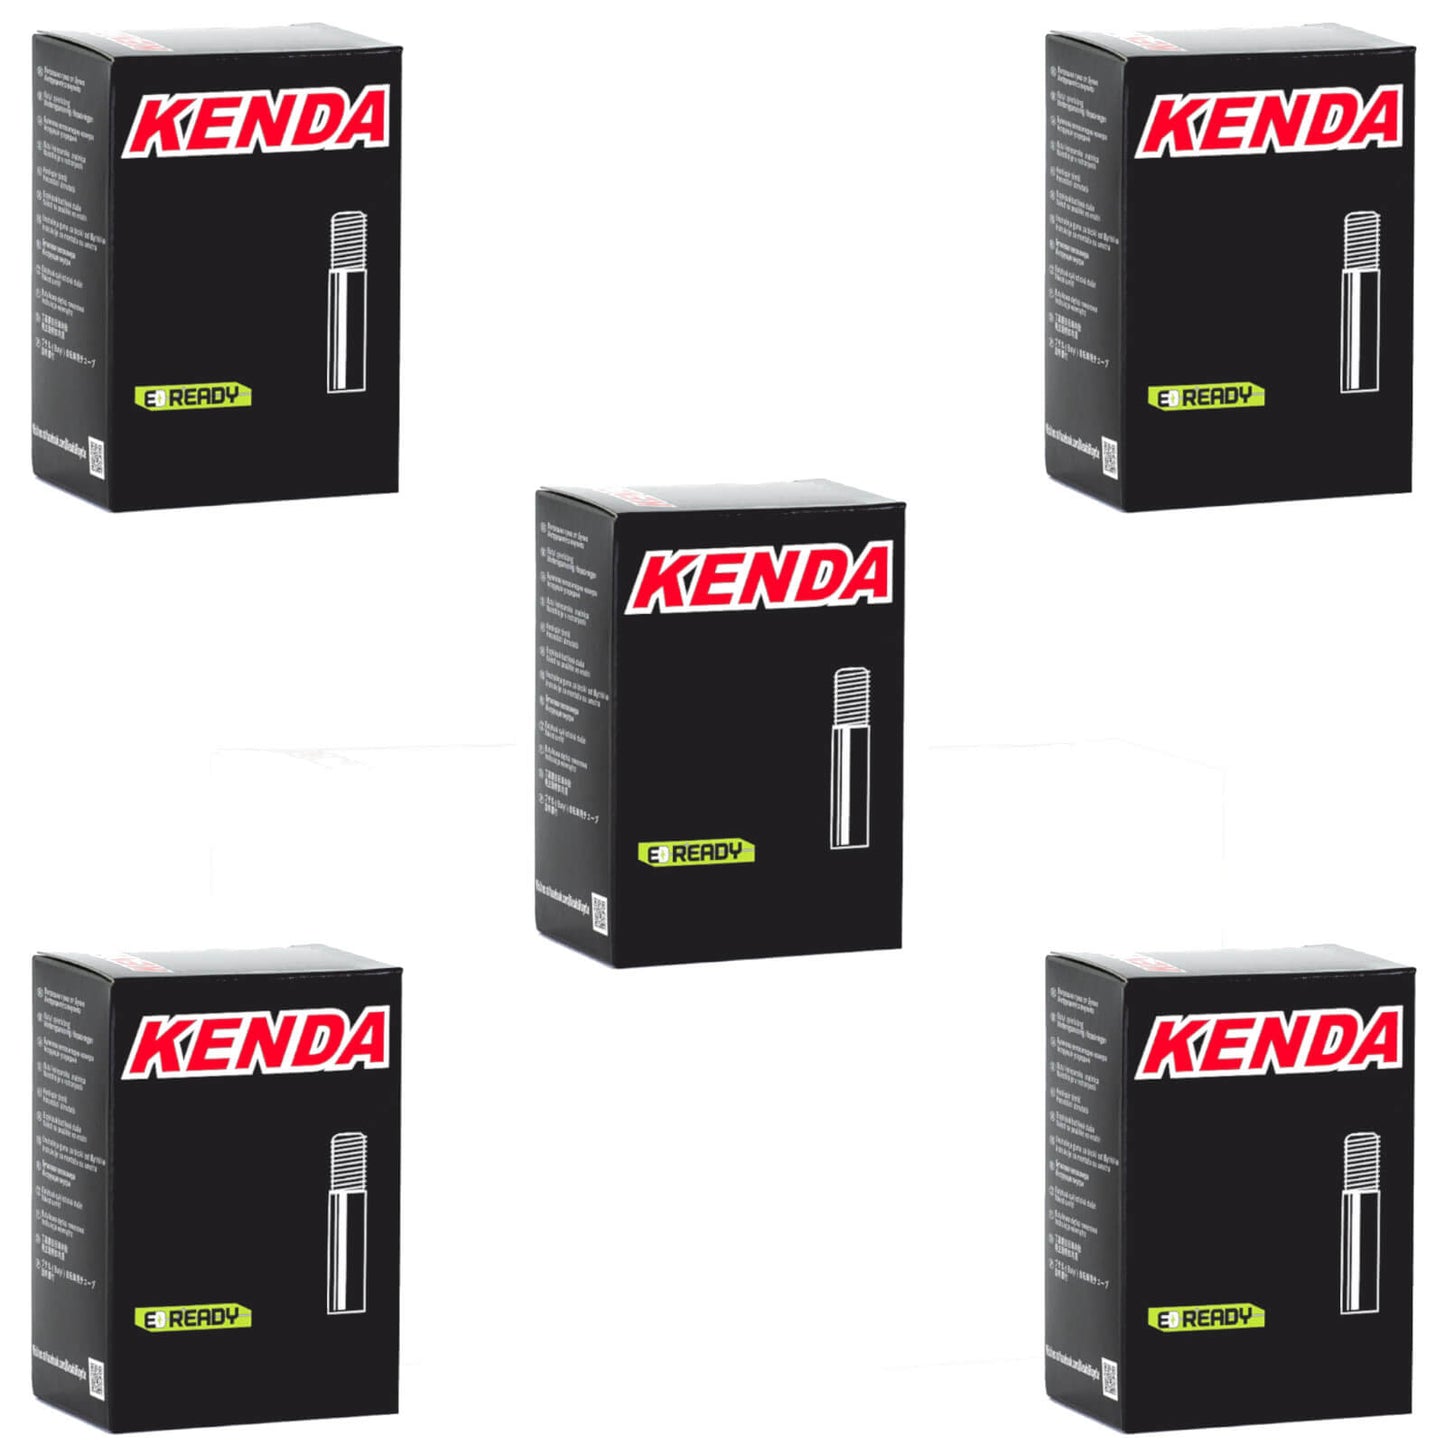 Kenda 20x1.0-1.5" 20 Inch Schrader Valve Bike Inner Tube Pack of 5